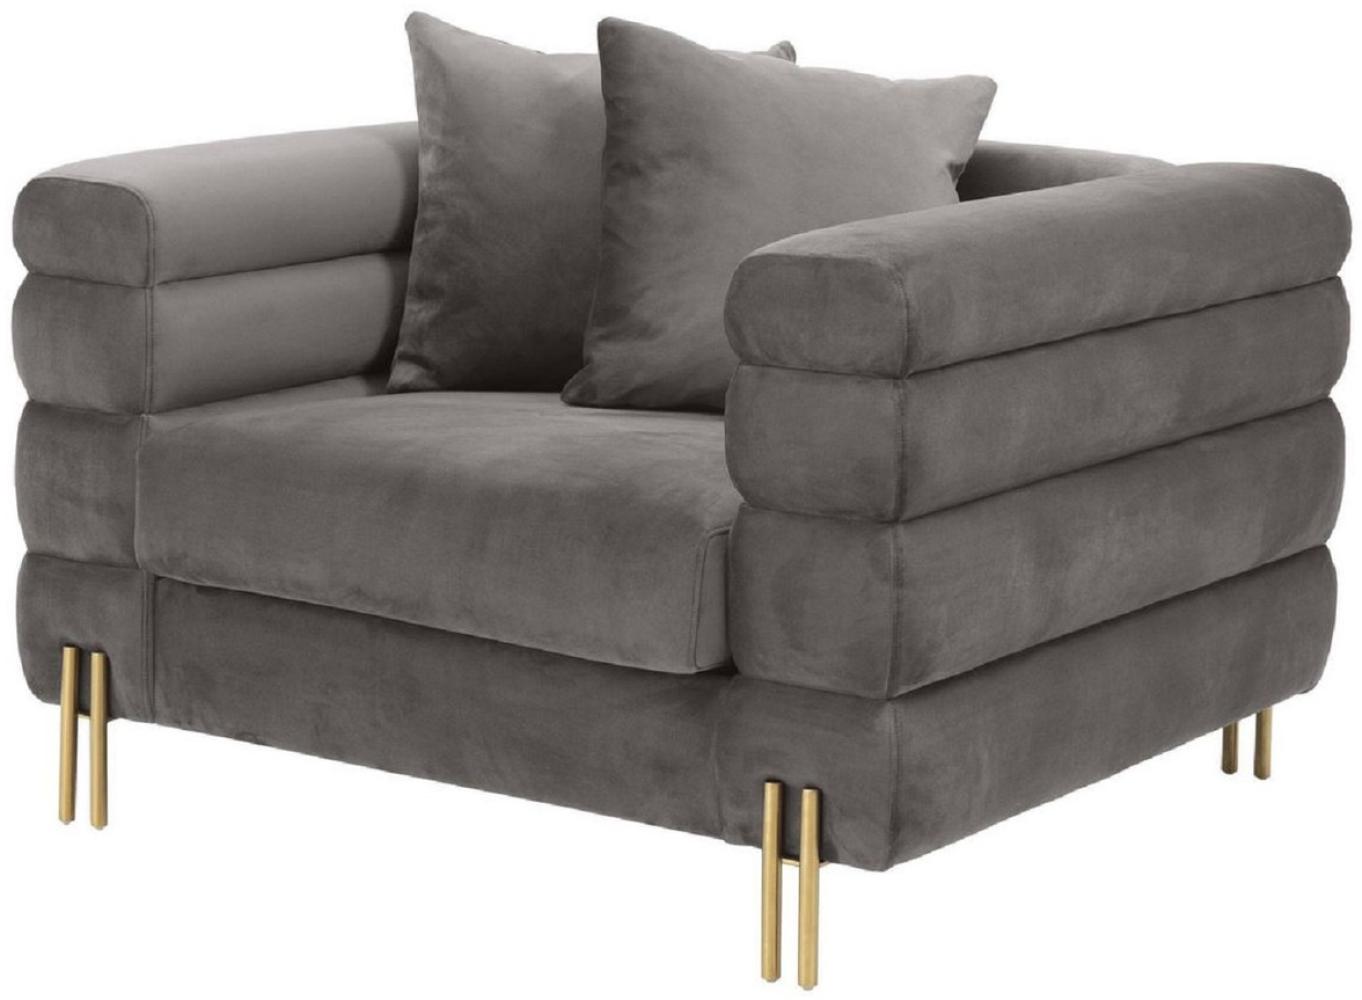 Casa Padrino Luxus Sessel Grau / Messingfarben 109 x 97 x H. 68 cm - Wohnzimmer Sessel mit edlem Samtstoff - Luxus Möbel Bild 1